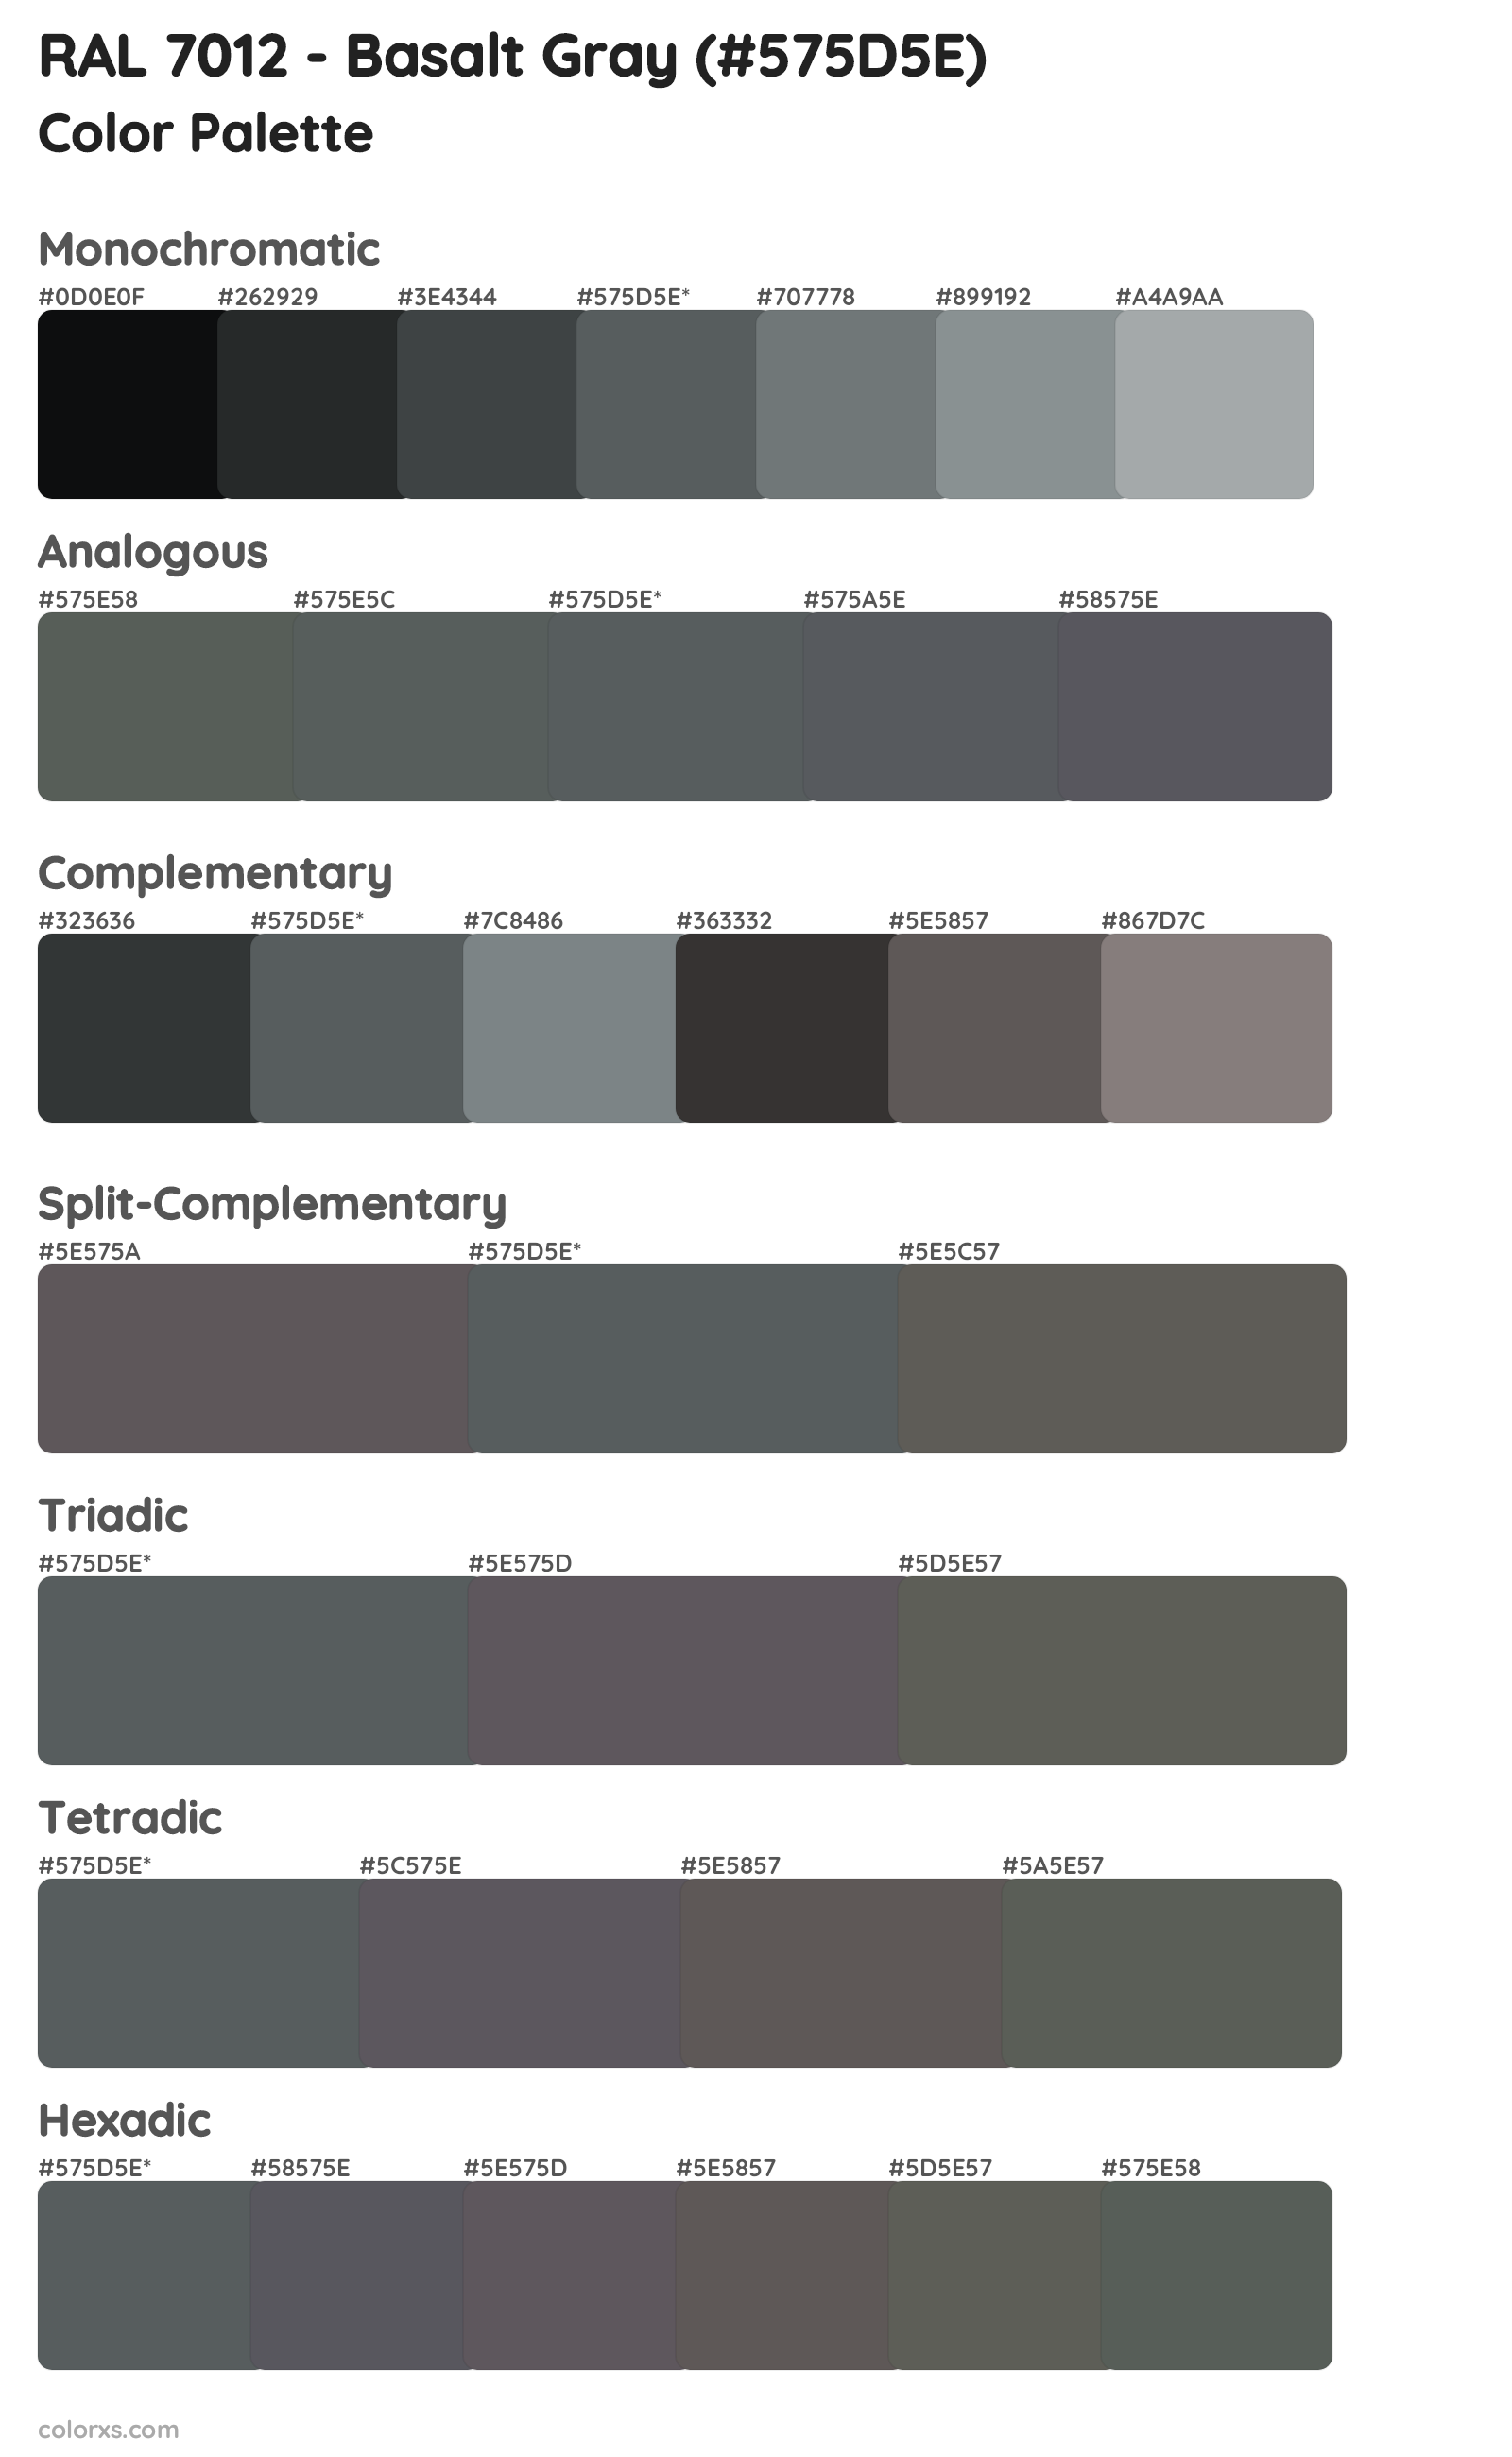 RAL 7012 - Basalt Gray Color Scheme Palettes